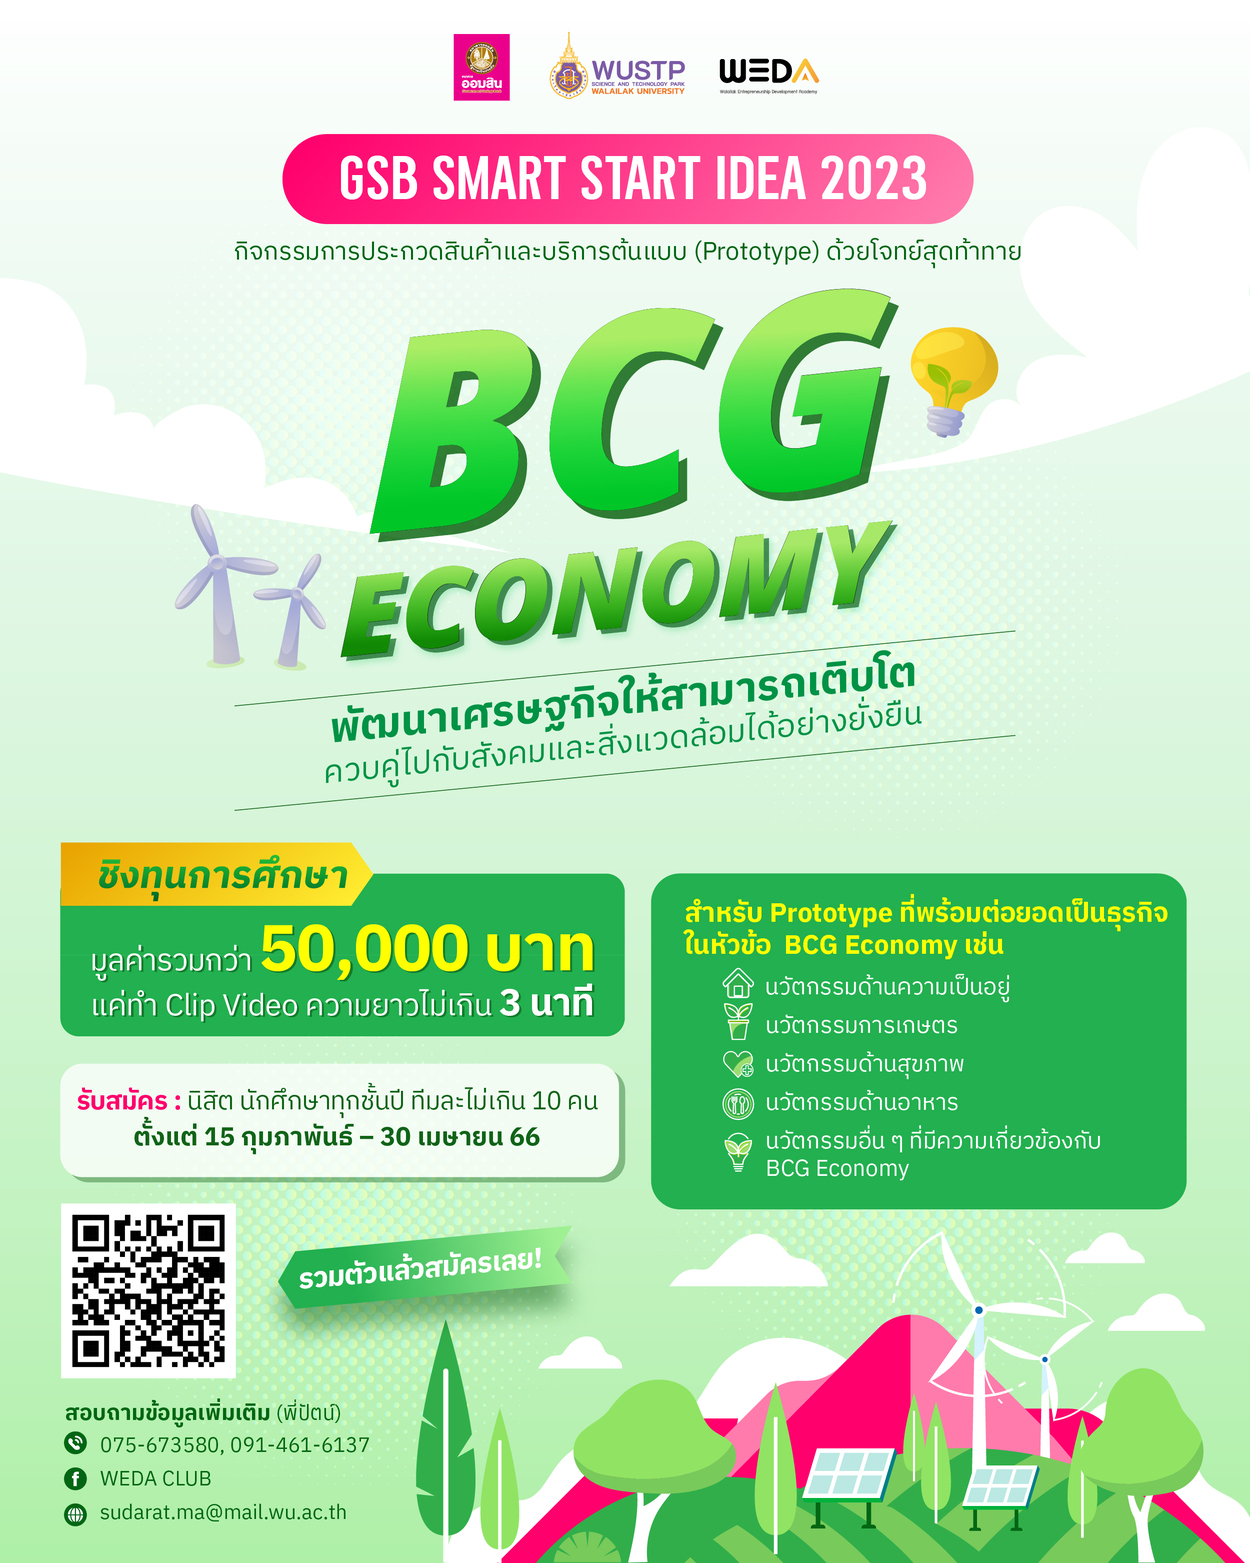 แก้ล่าสุด GSB Smart Start Idea